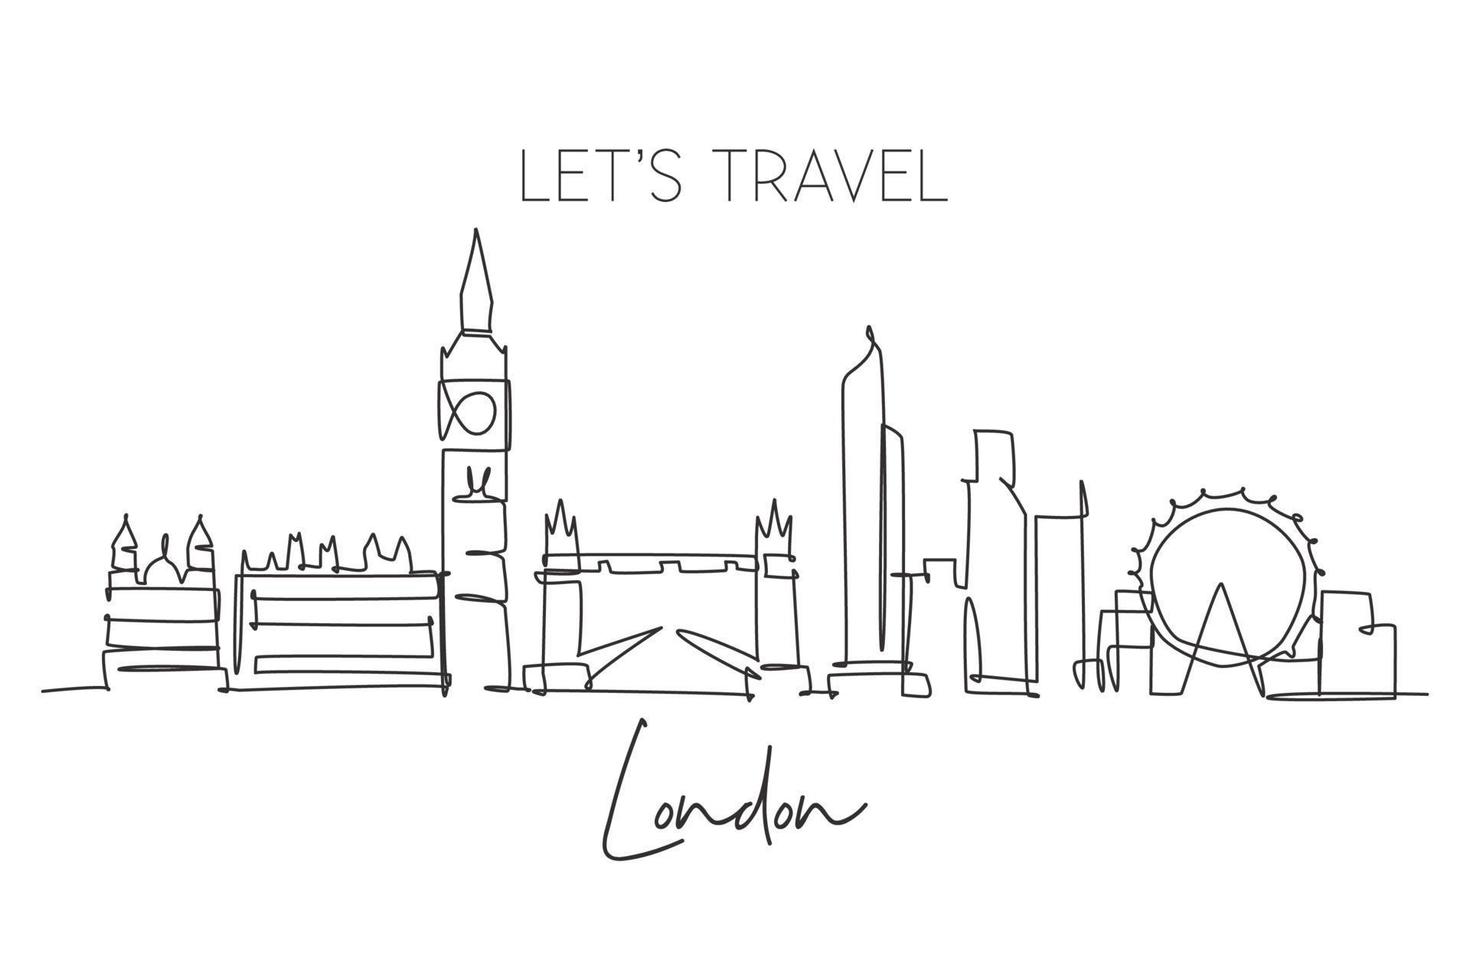 eine durchgehende Linienzeichnung der Skyline von London. schöner Wolkenkratzer der Stadt. Weltlandschaft Tourismus Reisen Urlaub Zuhause Wanddekor Poster Print-Konzept. einzeiliges zeichnen design vektorillustration vektor